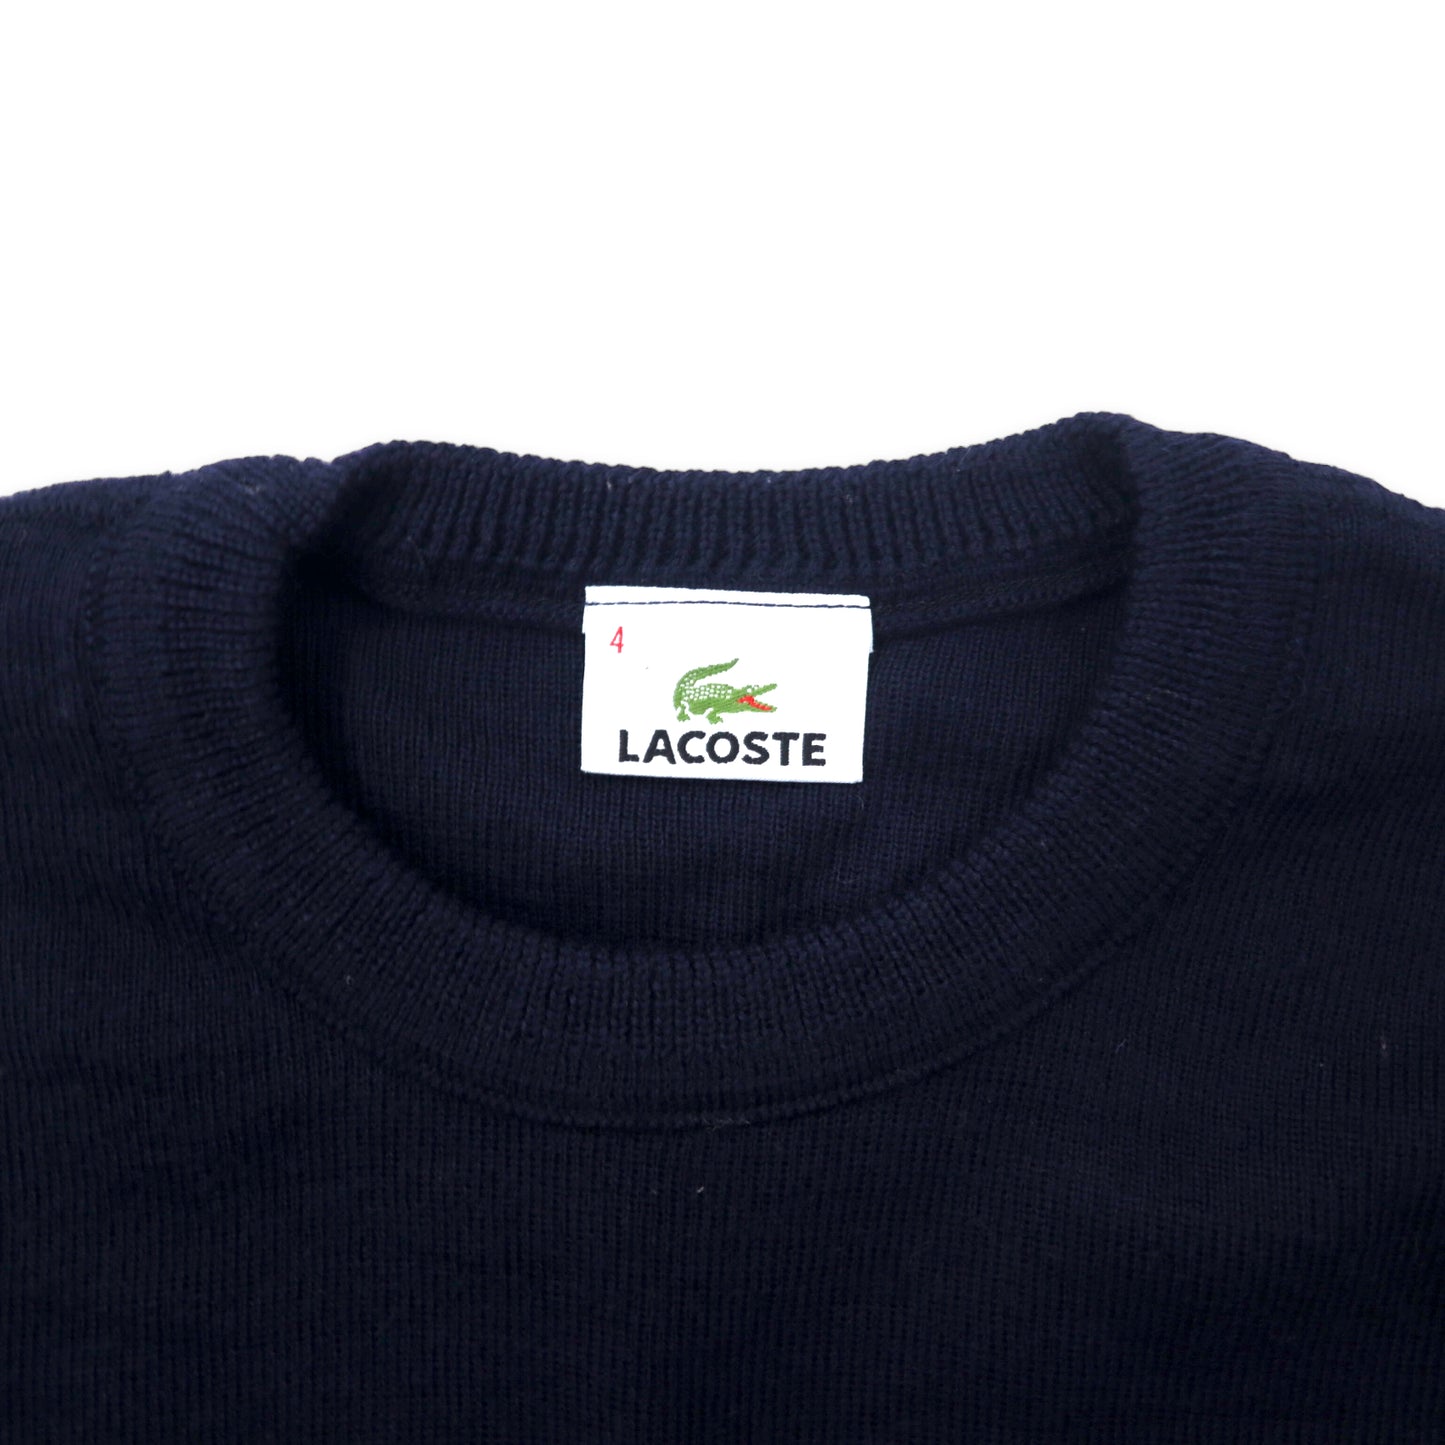 LACOSTE ハイゲージ ニット セーター 4 ネイビー ウール ワンポイントロゴ